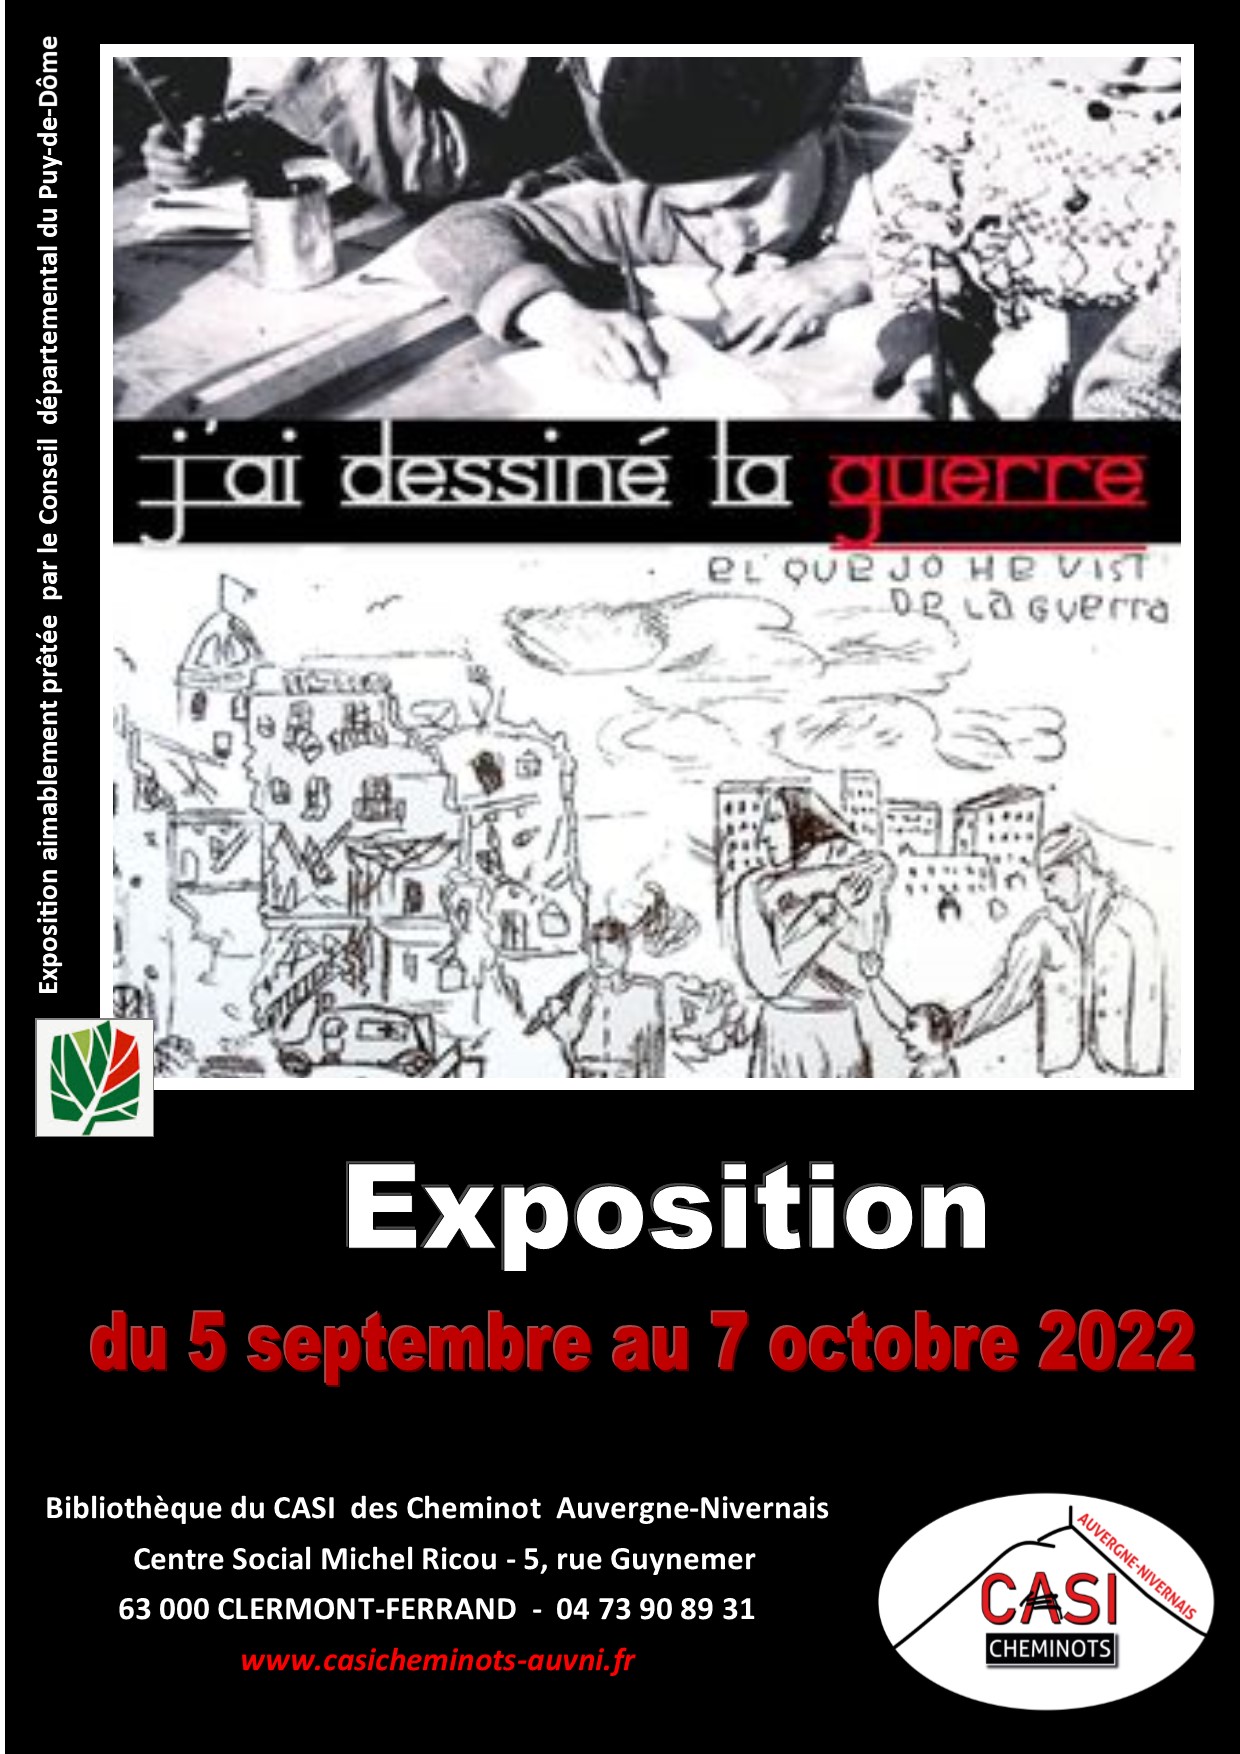 2022 EXPO JAI DESSINE LA GUERRE